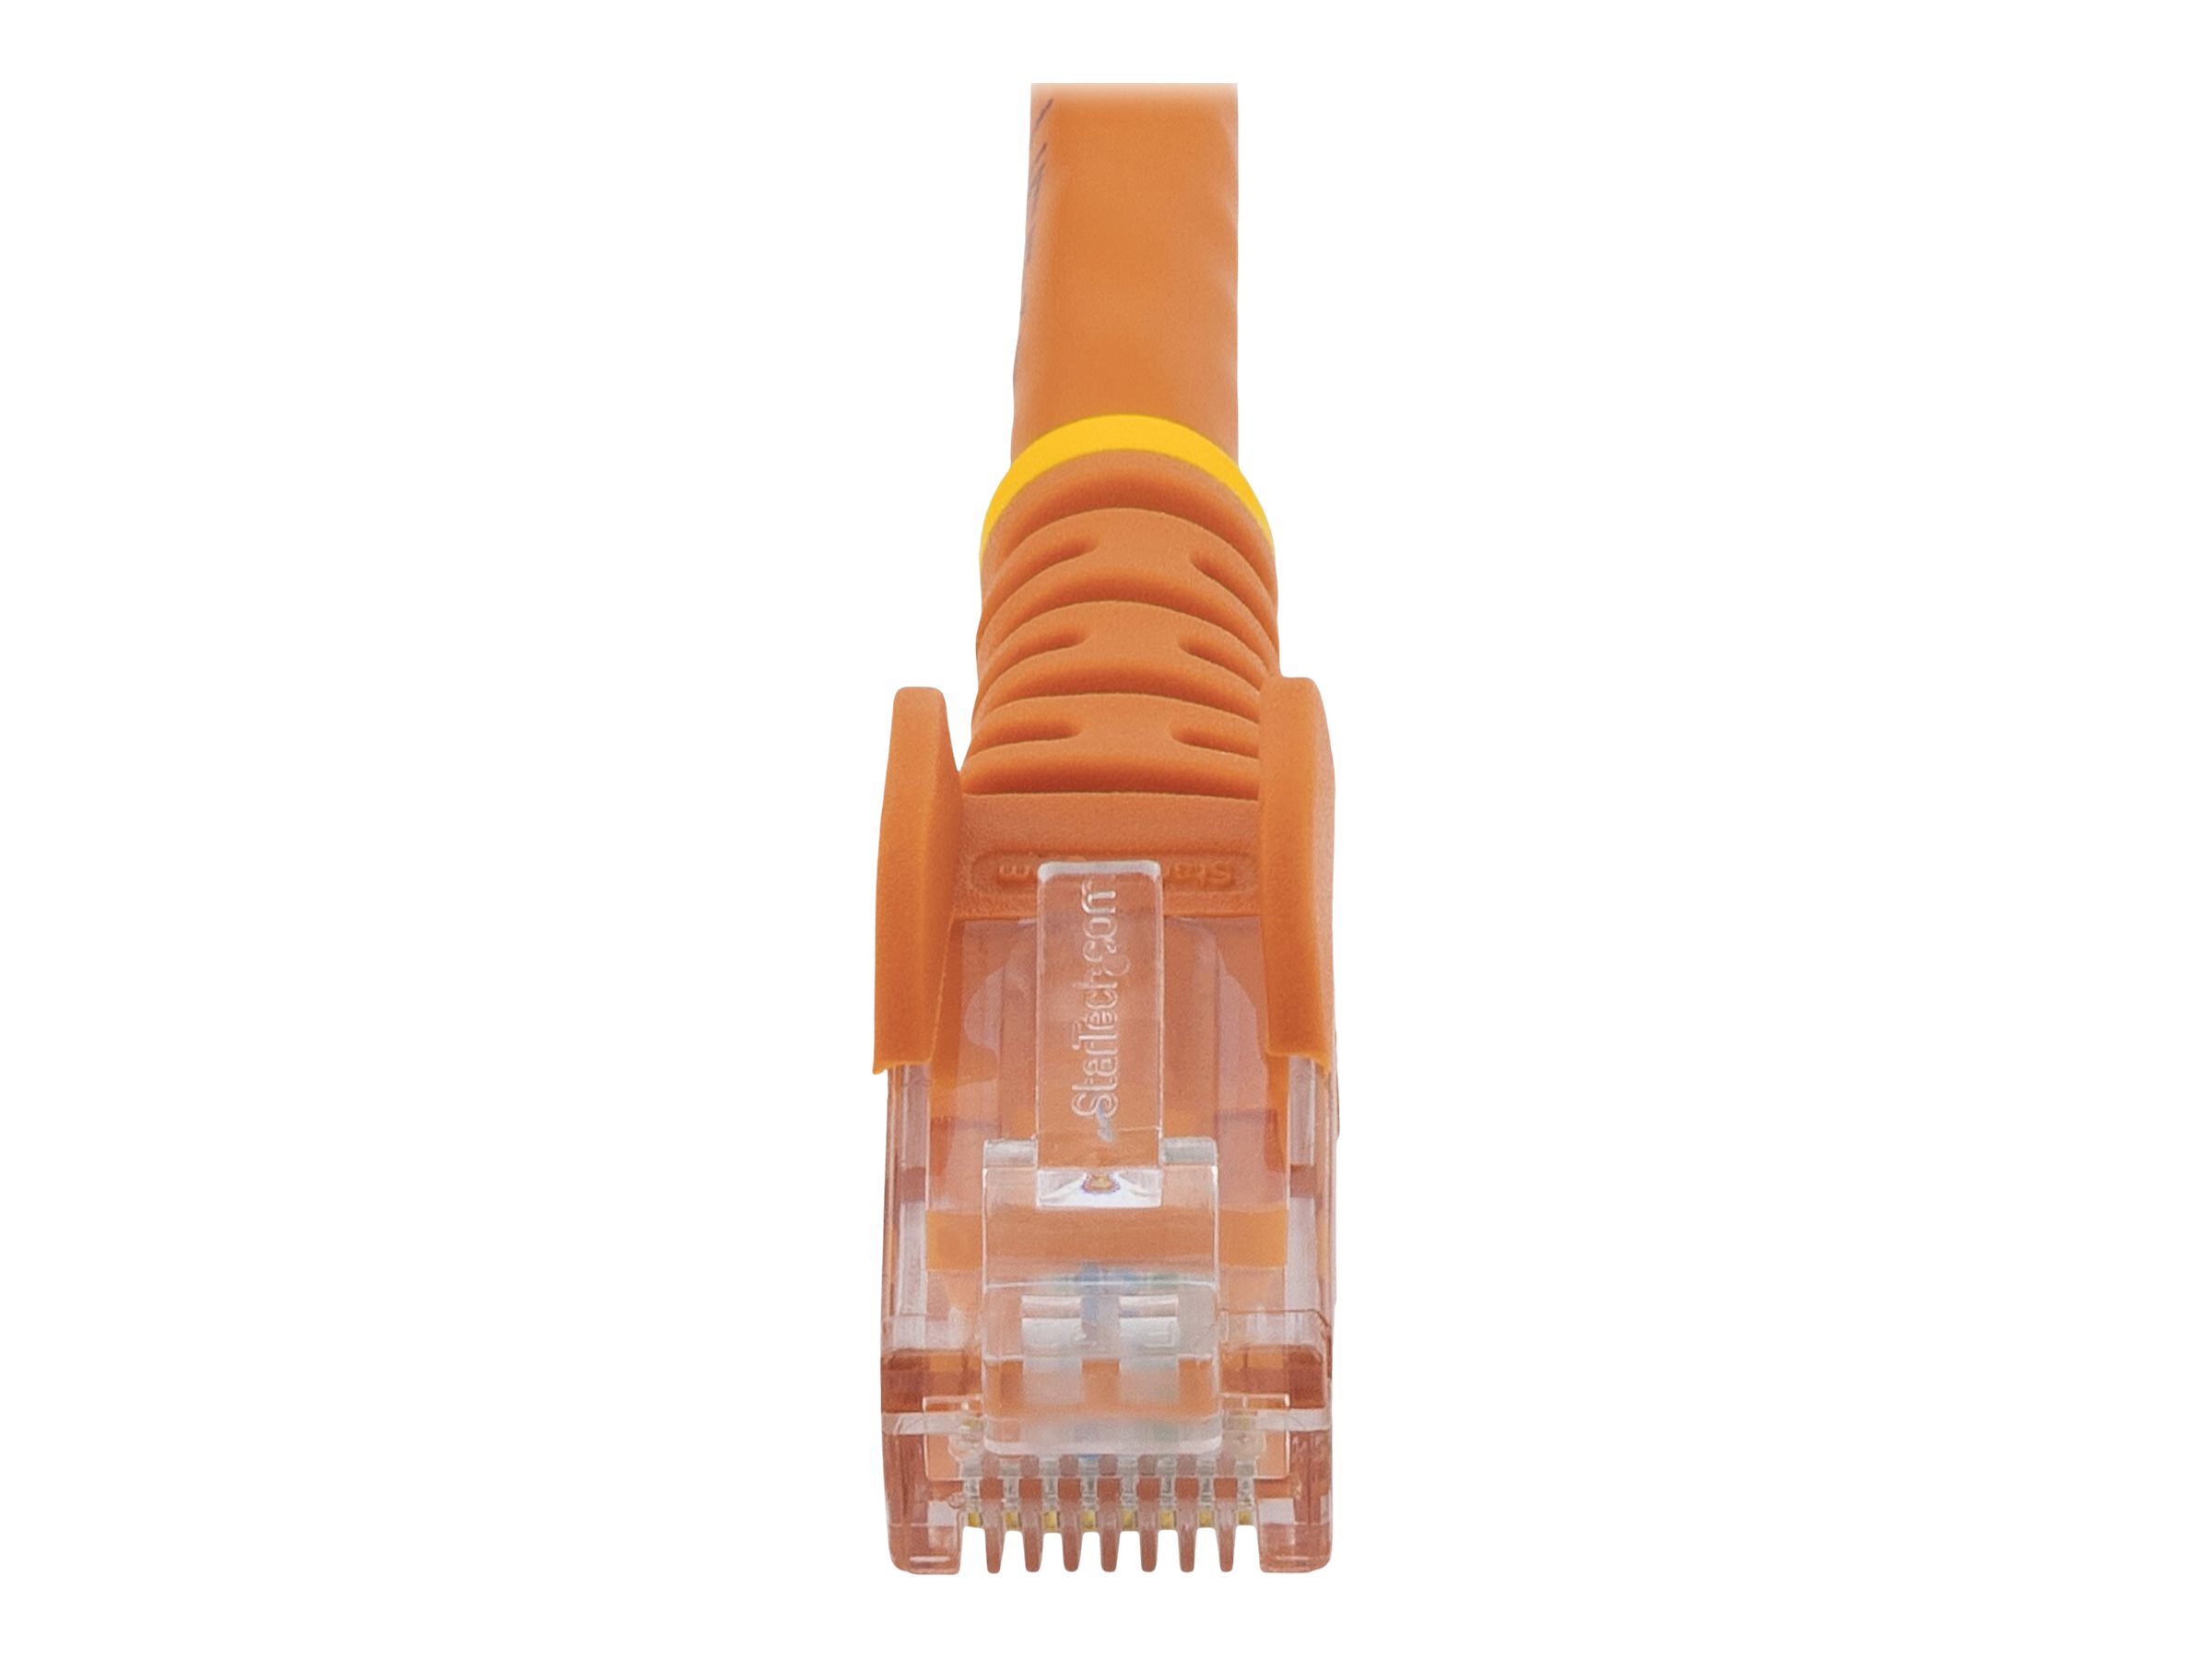 N6PATC50CMOR Startechcom Cable De Red De 05M Naranja Cat6 Utp Ethernet Gigabit Rj45 Sin Enganches  Latiguillo Snagless De 50Cm  Cable De Red  Rj45 M A Rj45 M  50 Cm  Utp  Cat 6  Moldeado Sin Enganches Trenzado  Naranja